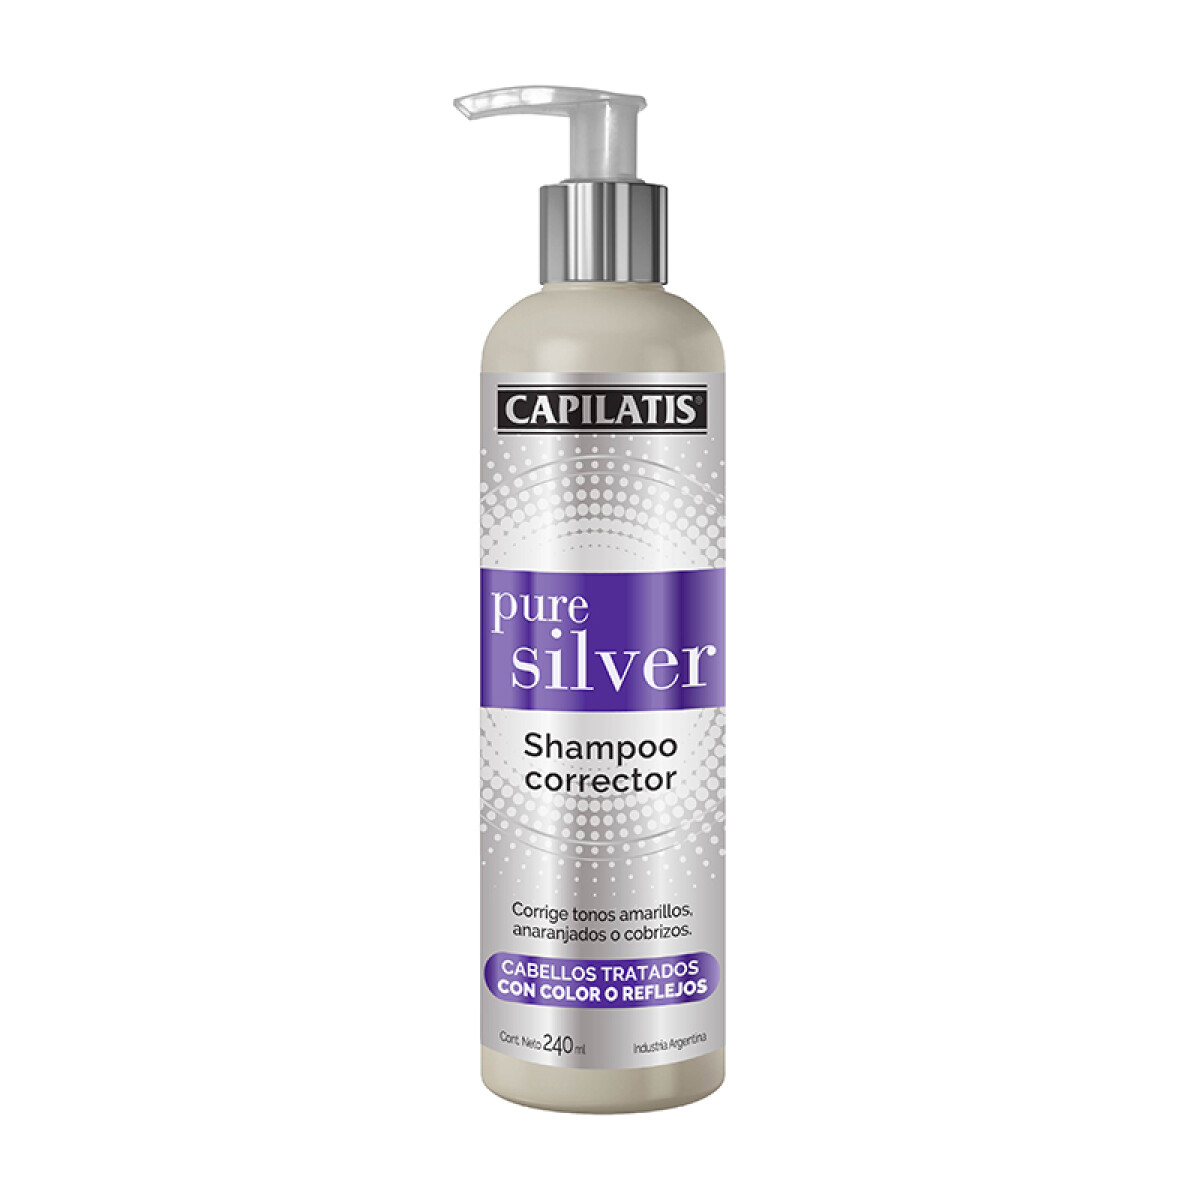 Capilatis Pure Silver shampoo corrector 